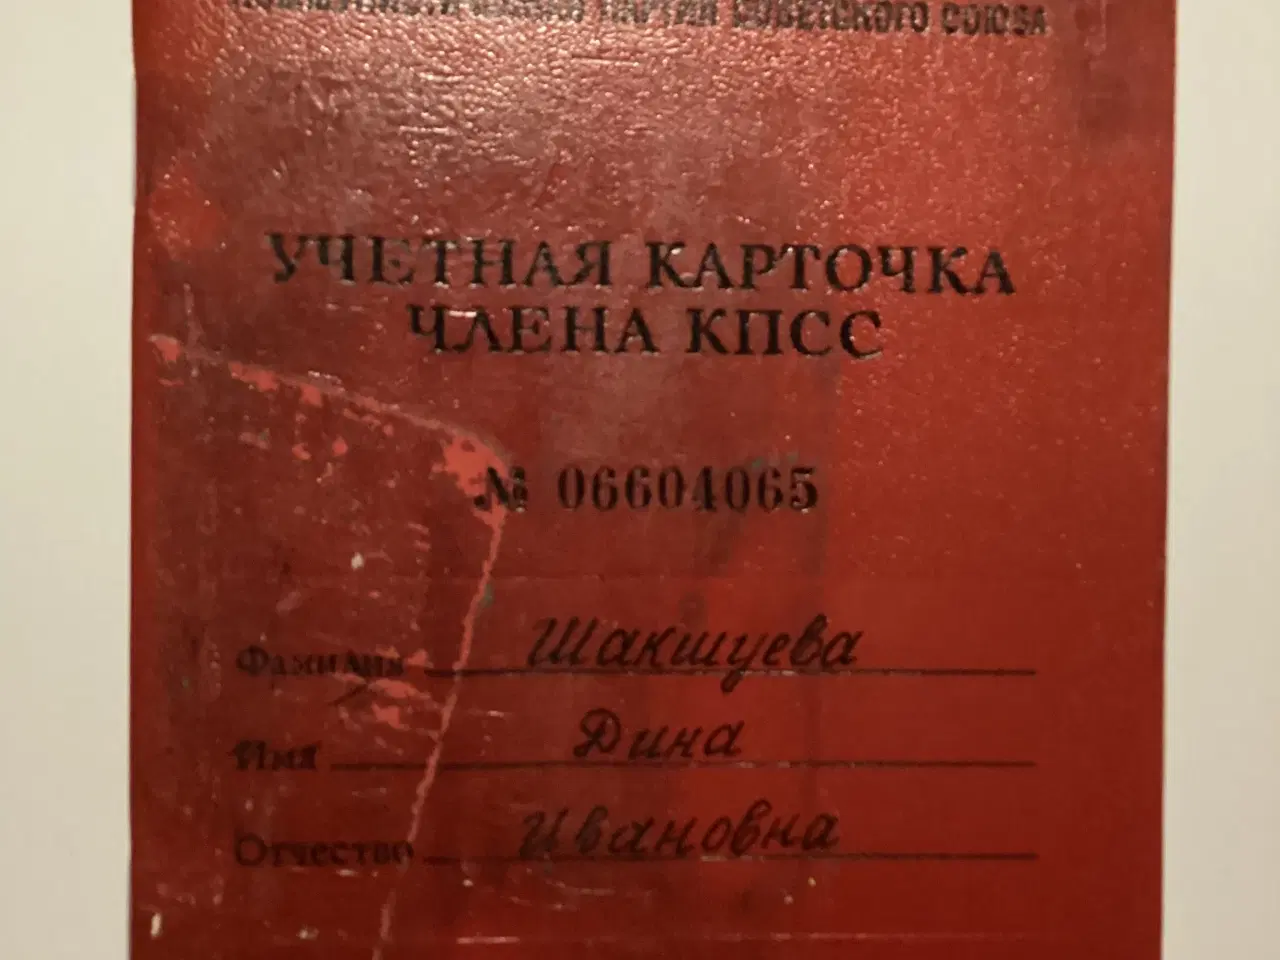 Billede 1 - Sovjetiske/russiske dokumenter